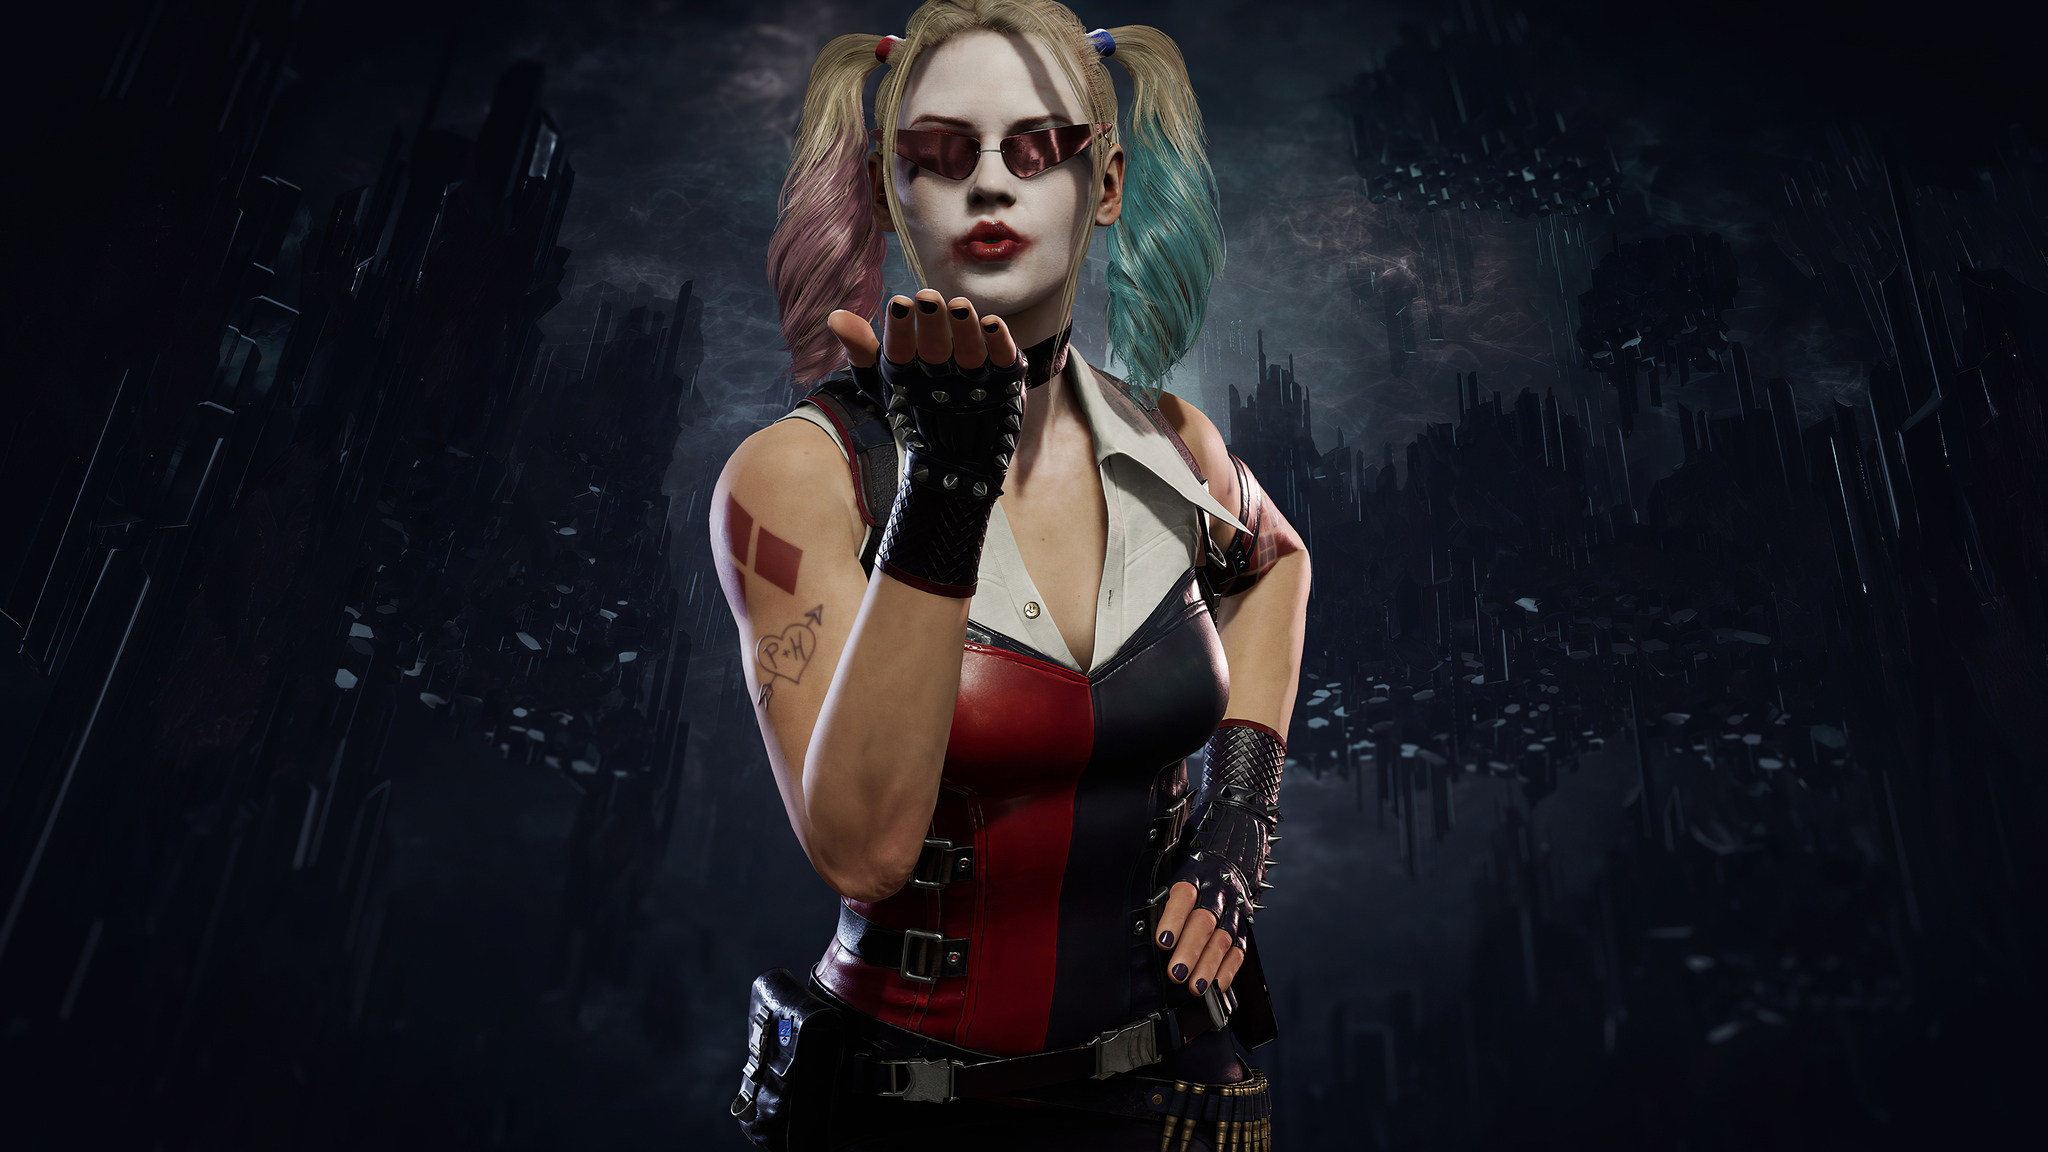 Harley Quinn Mortal Kombat 11 In 2048x1152 Resolution. harley-quinn-mortal-...